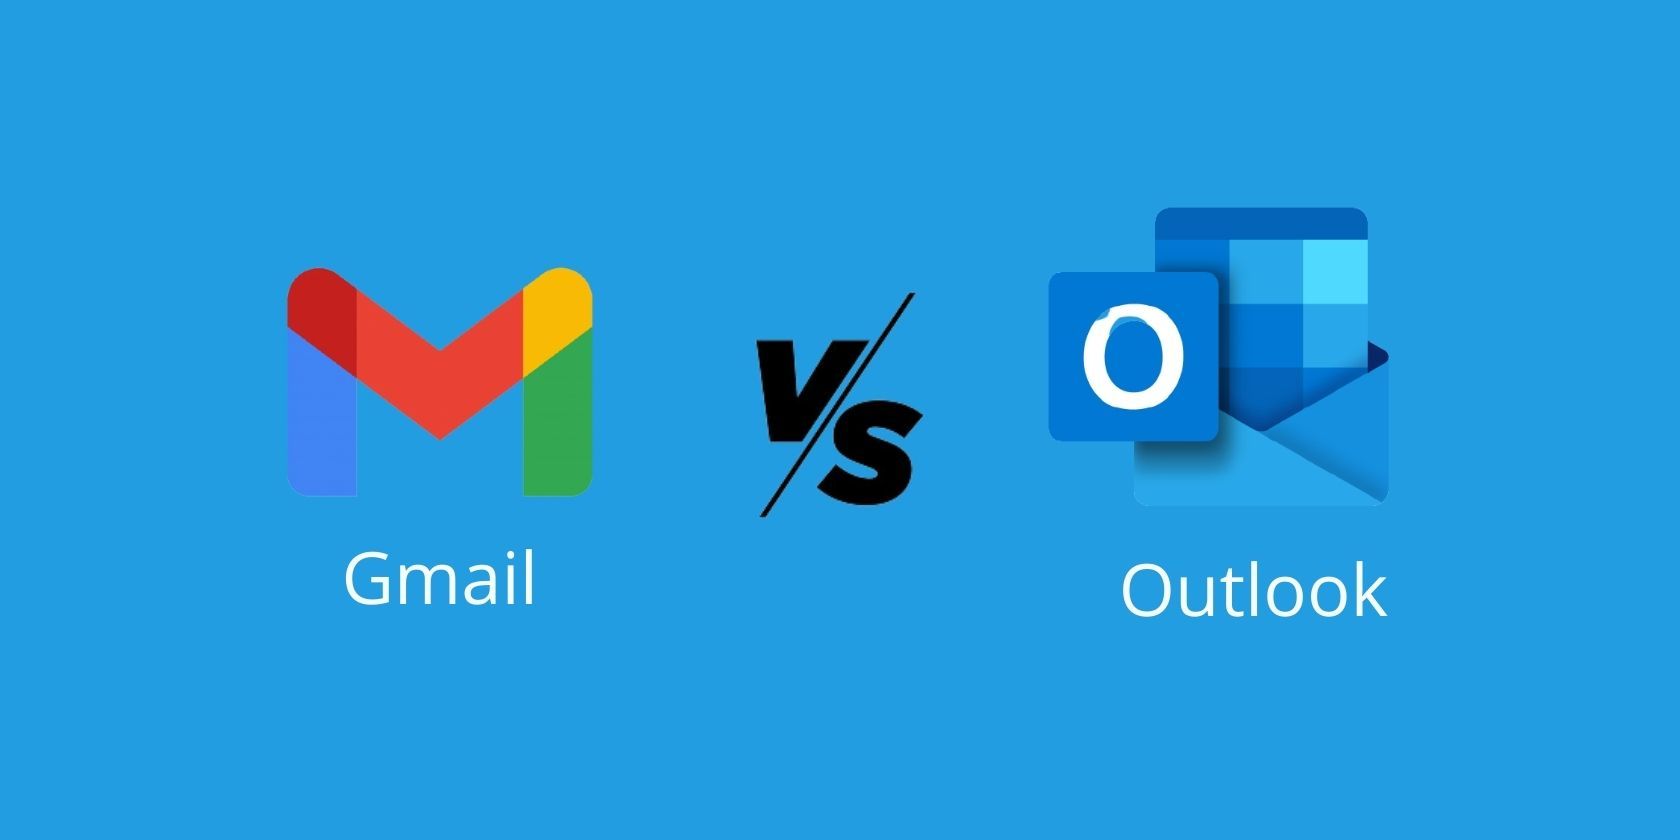 Outlook در مقابل Gmail کدام سرویس ایمیل بهتر است؟ » خبر و ترفند روز